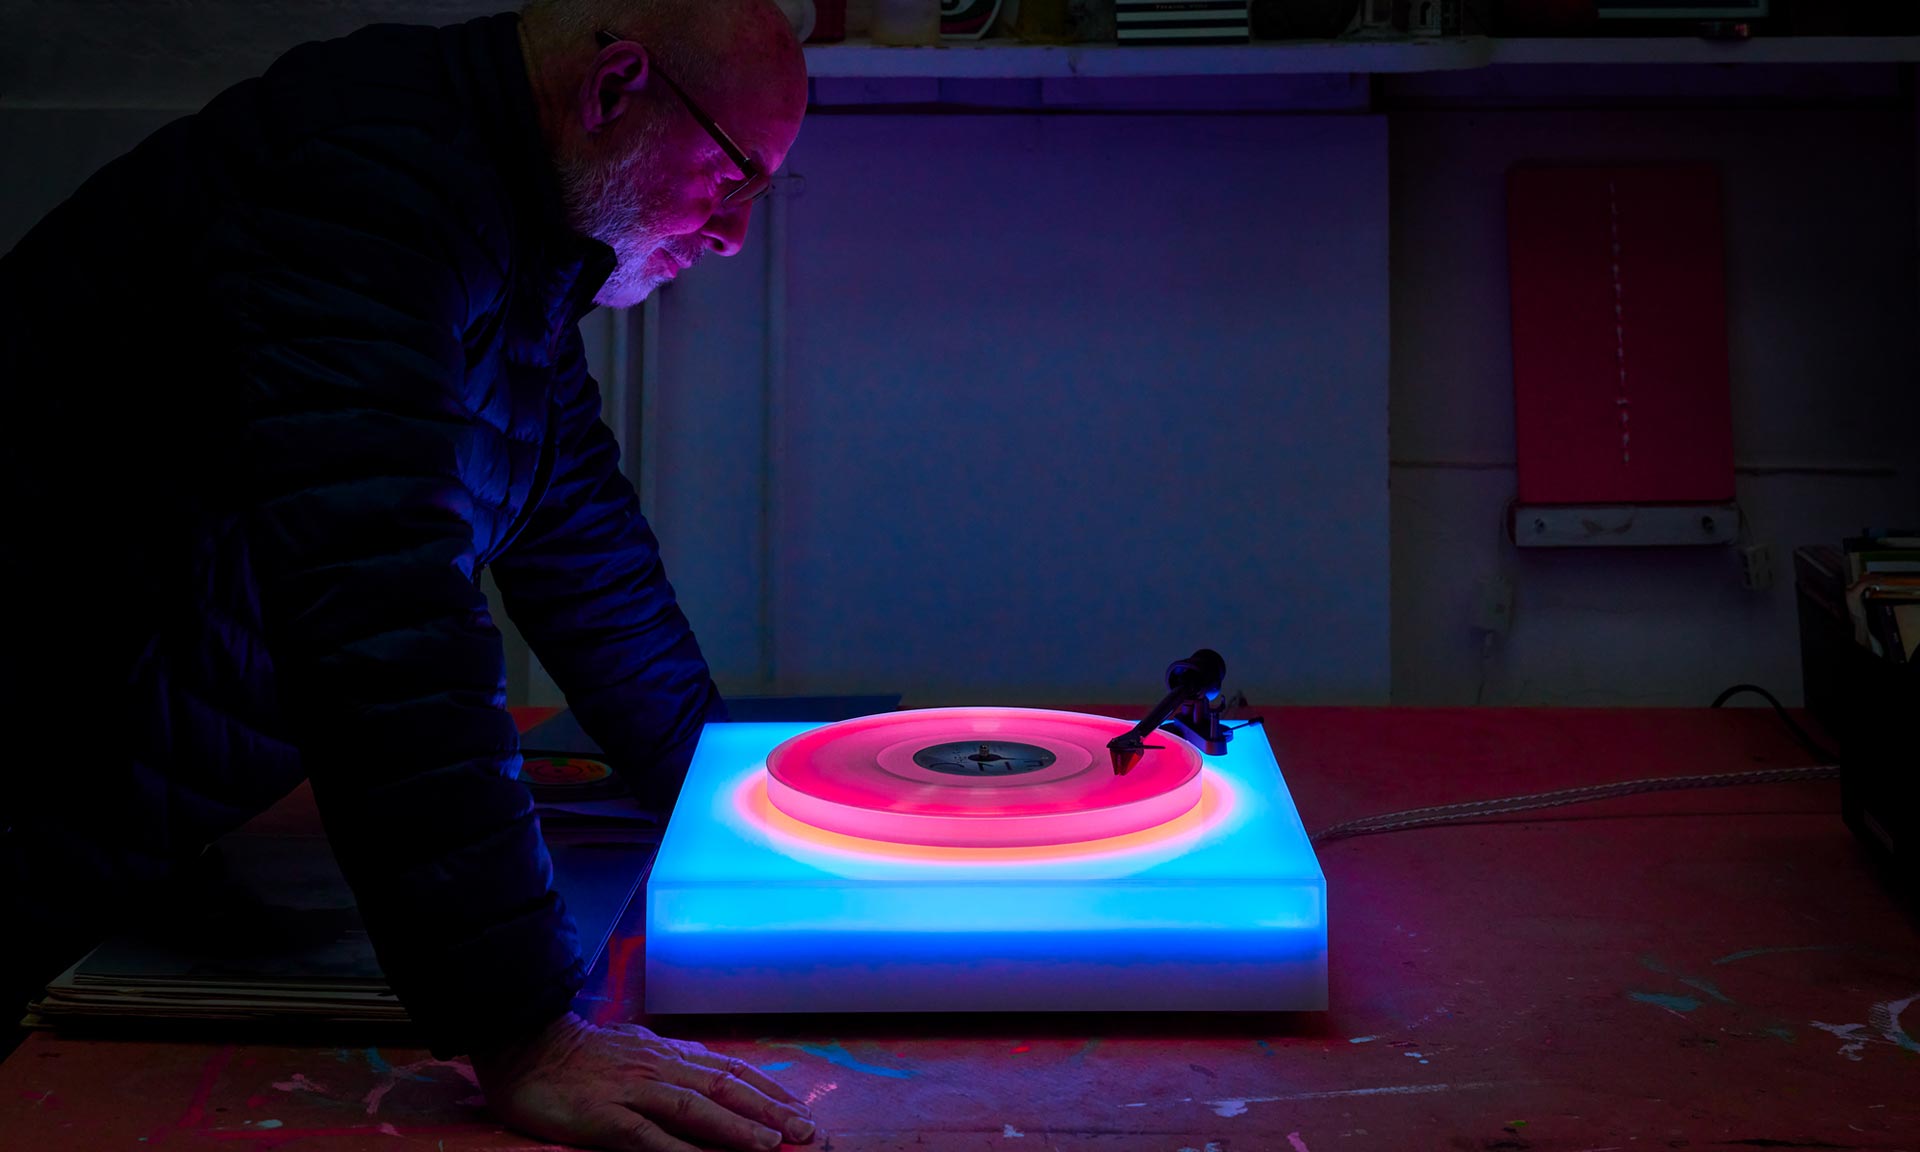 Brian Eno navrhl gramofon ze skla celý svítící v několika barevných scénách